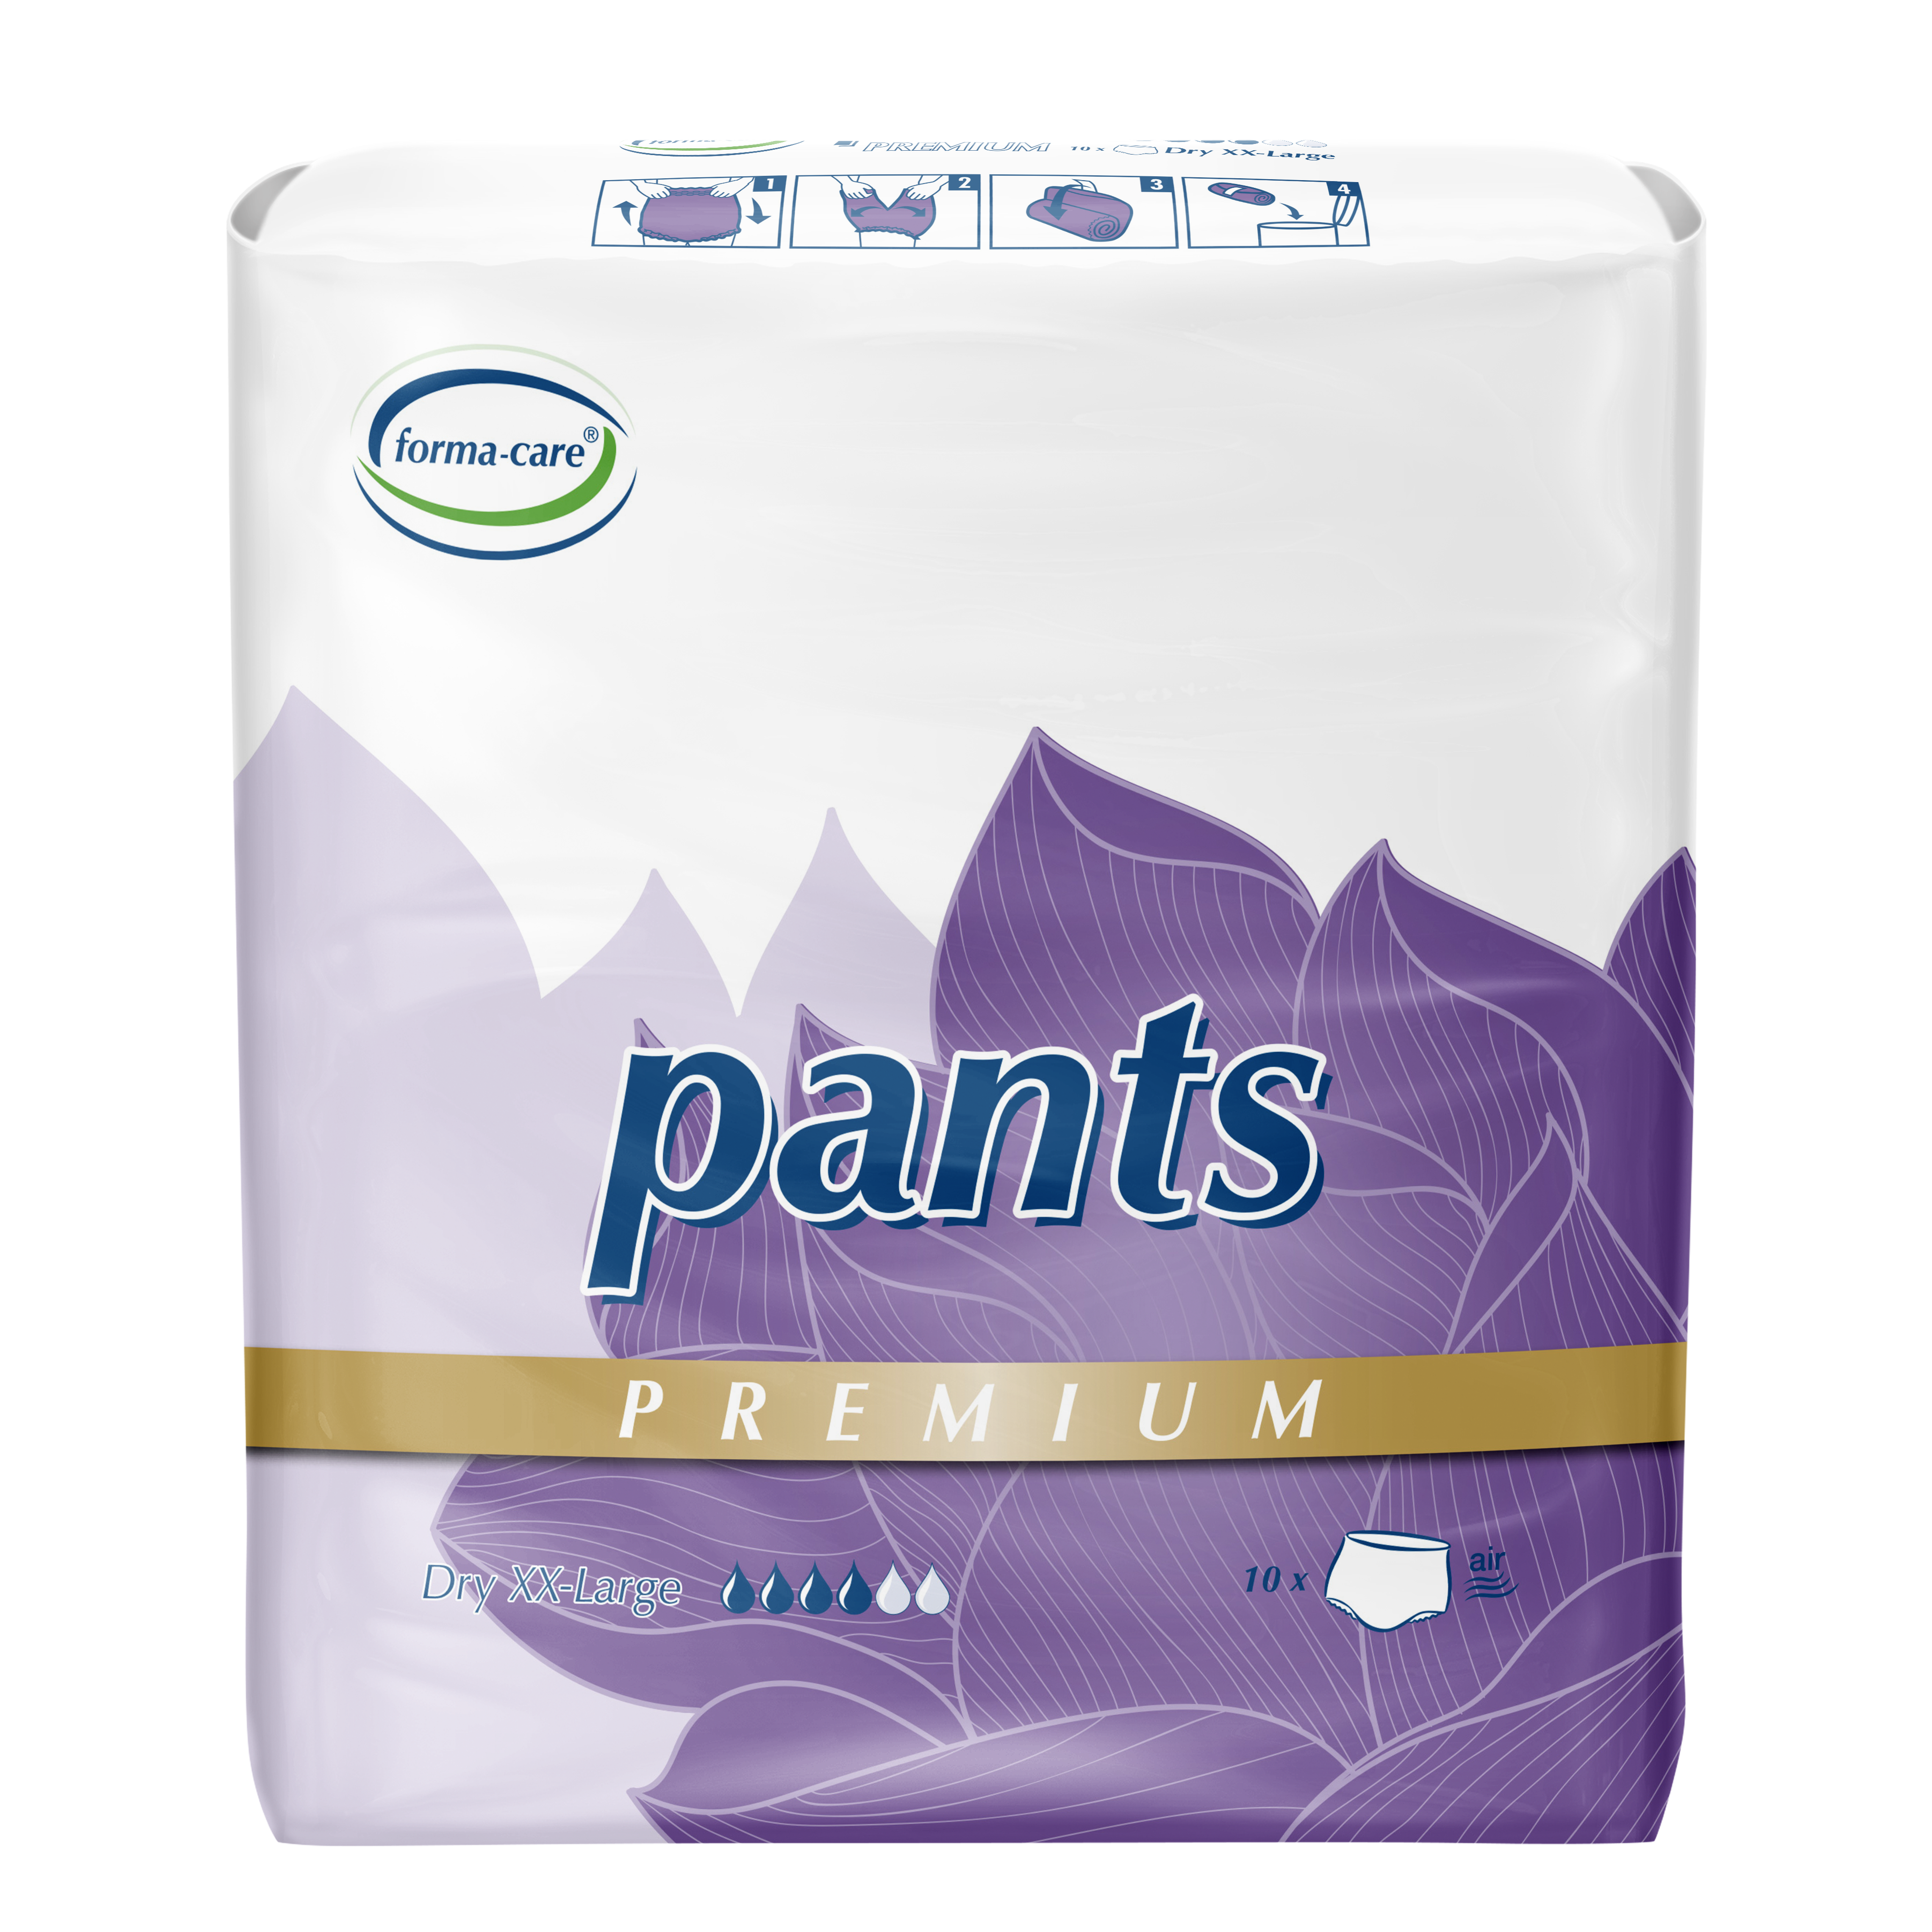 Abbildung eines Beutels forma-care Premium Pants Größe XXL